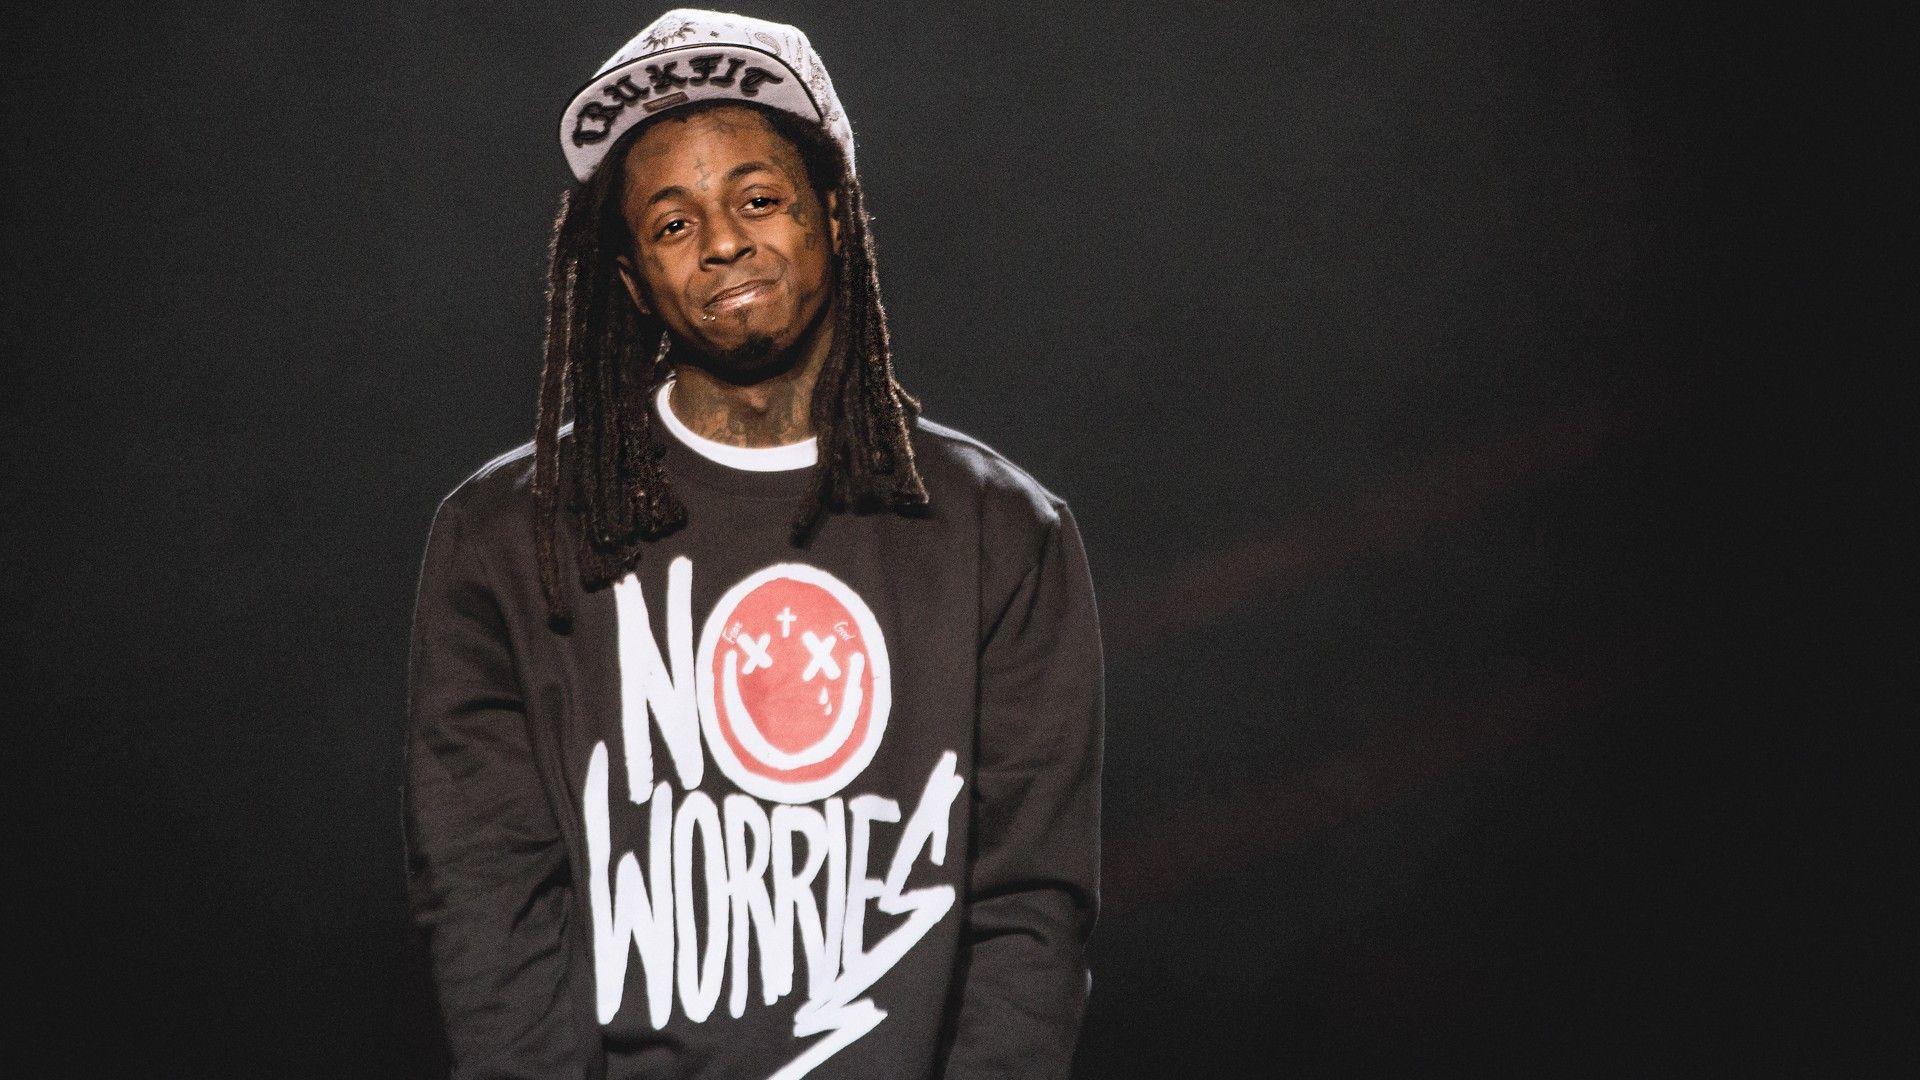 Lil Wayne afunguka kuwa kuanguka kwake akiuguwa kifafa